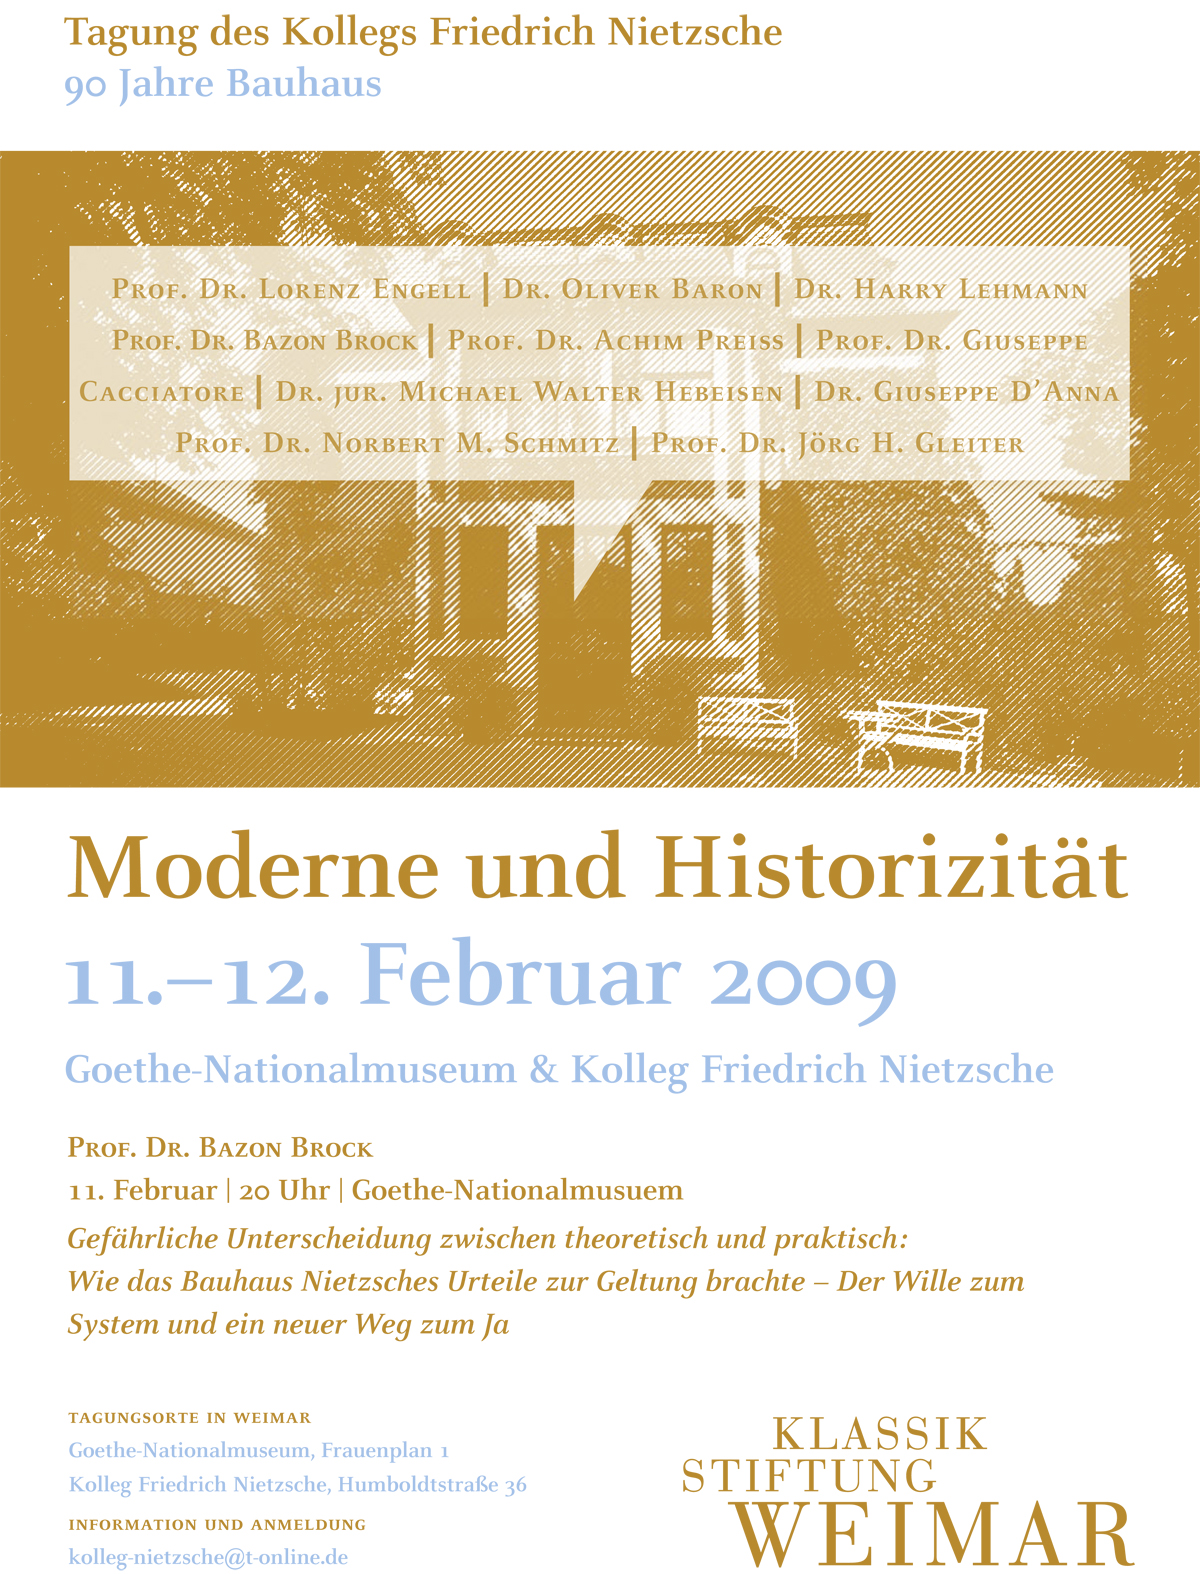 Moderne und Historizität, Bild: Plakat. Kolleg Friedrich Nietzsche der Klassik Stiftung Weimar, 11./12.02.2009. Gestaltung: Goldwiege.